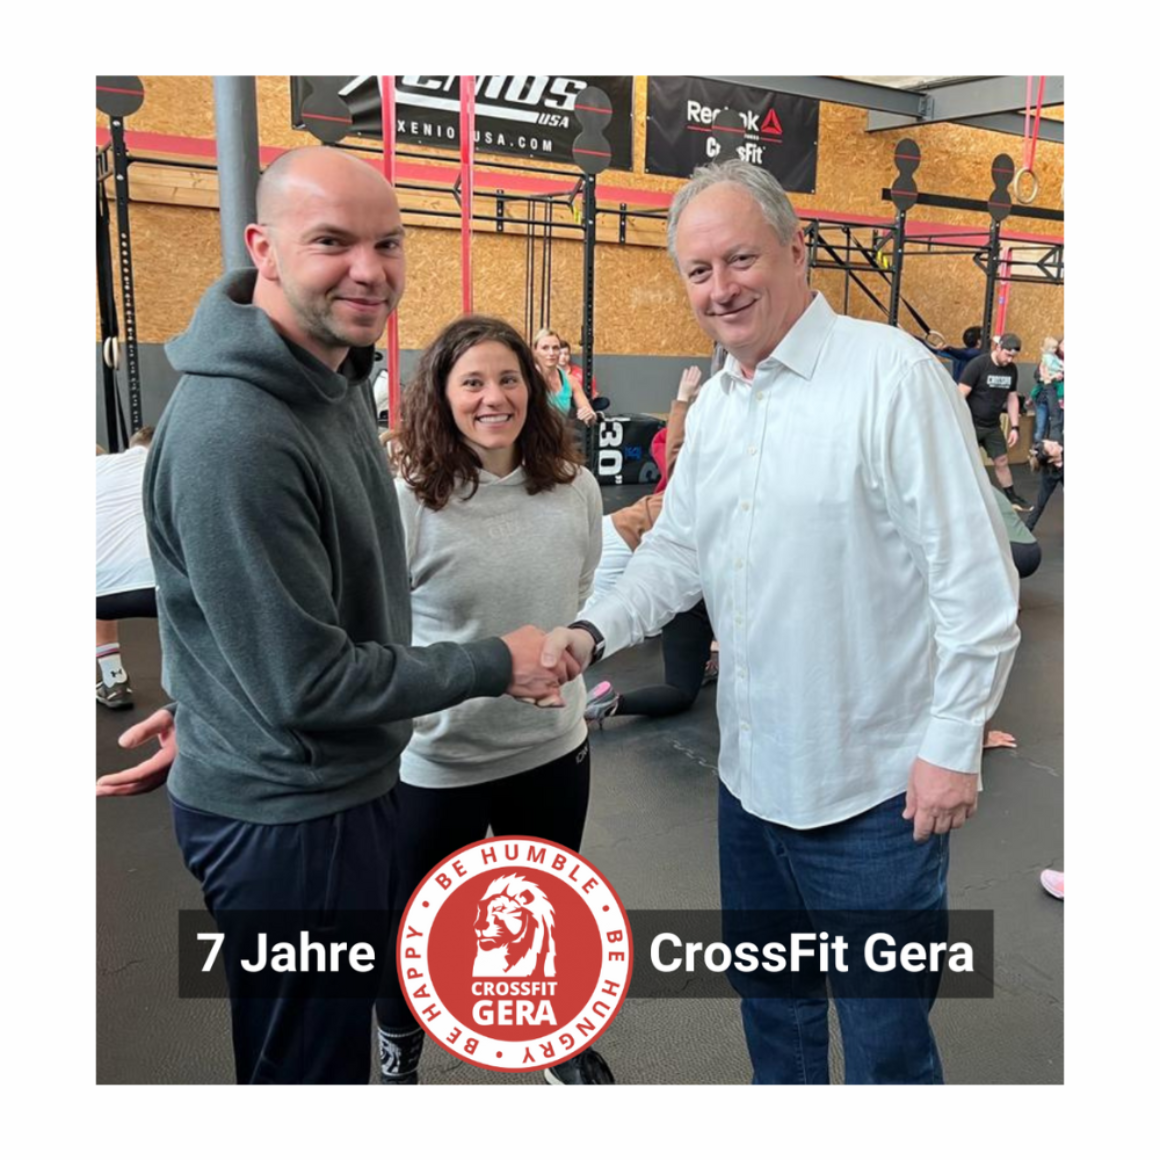 Ralph Walter gratuliert Michael Mütterlein und Yasmin Kunath zum 7 jährigen Bestehen des CrossFit Gera